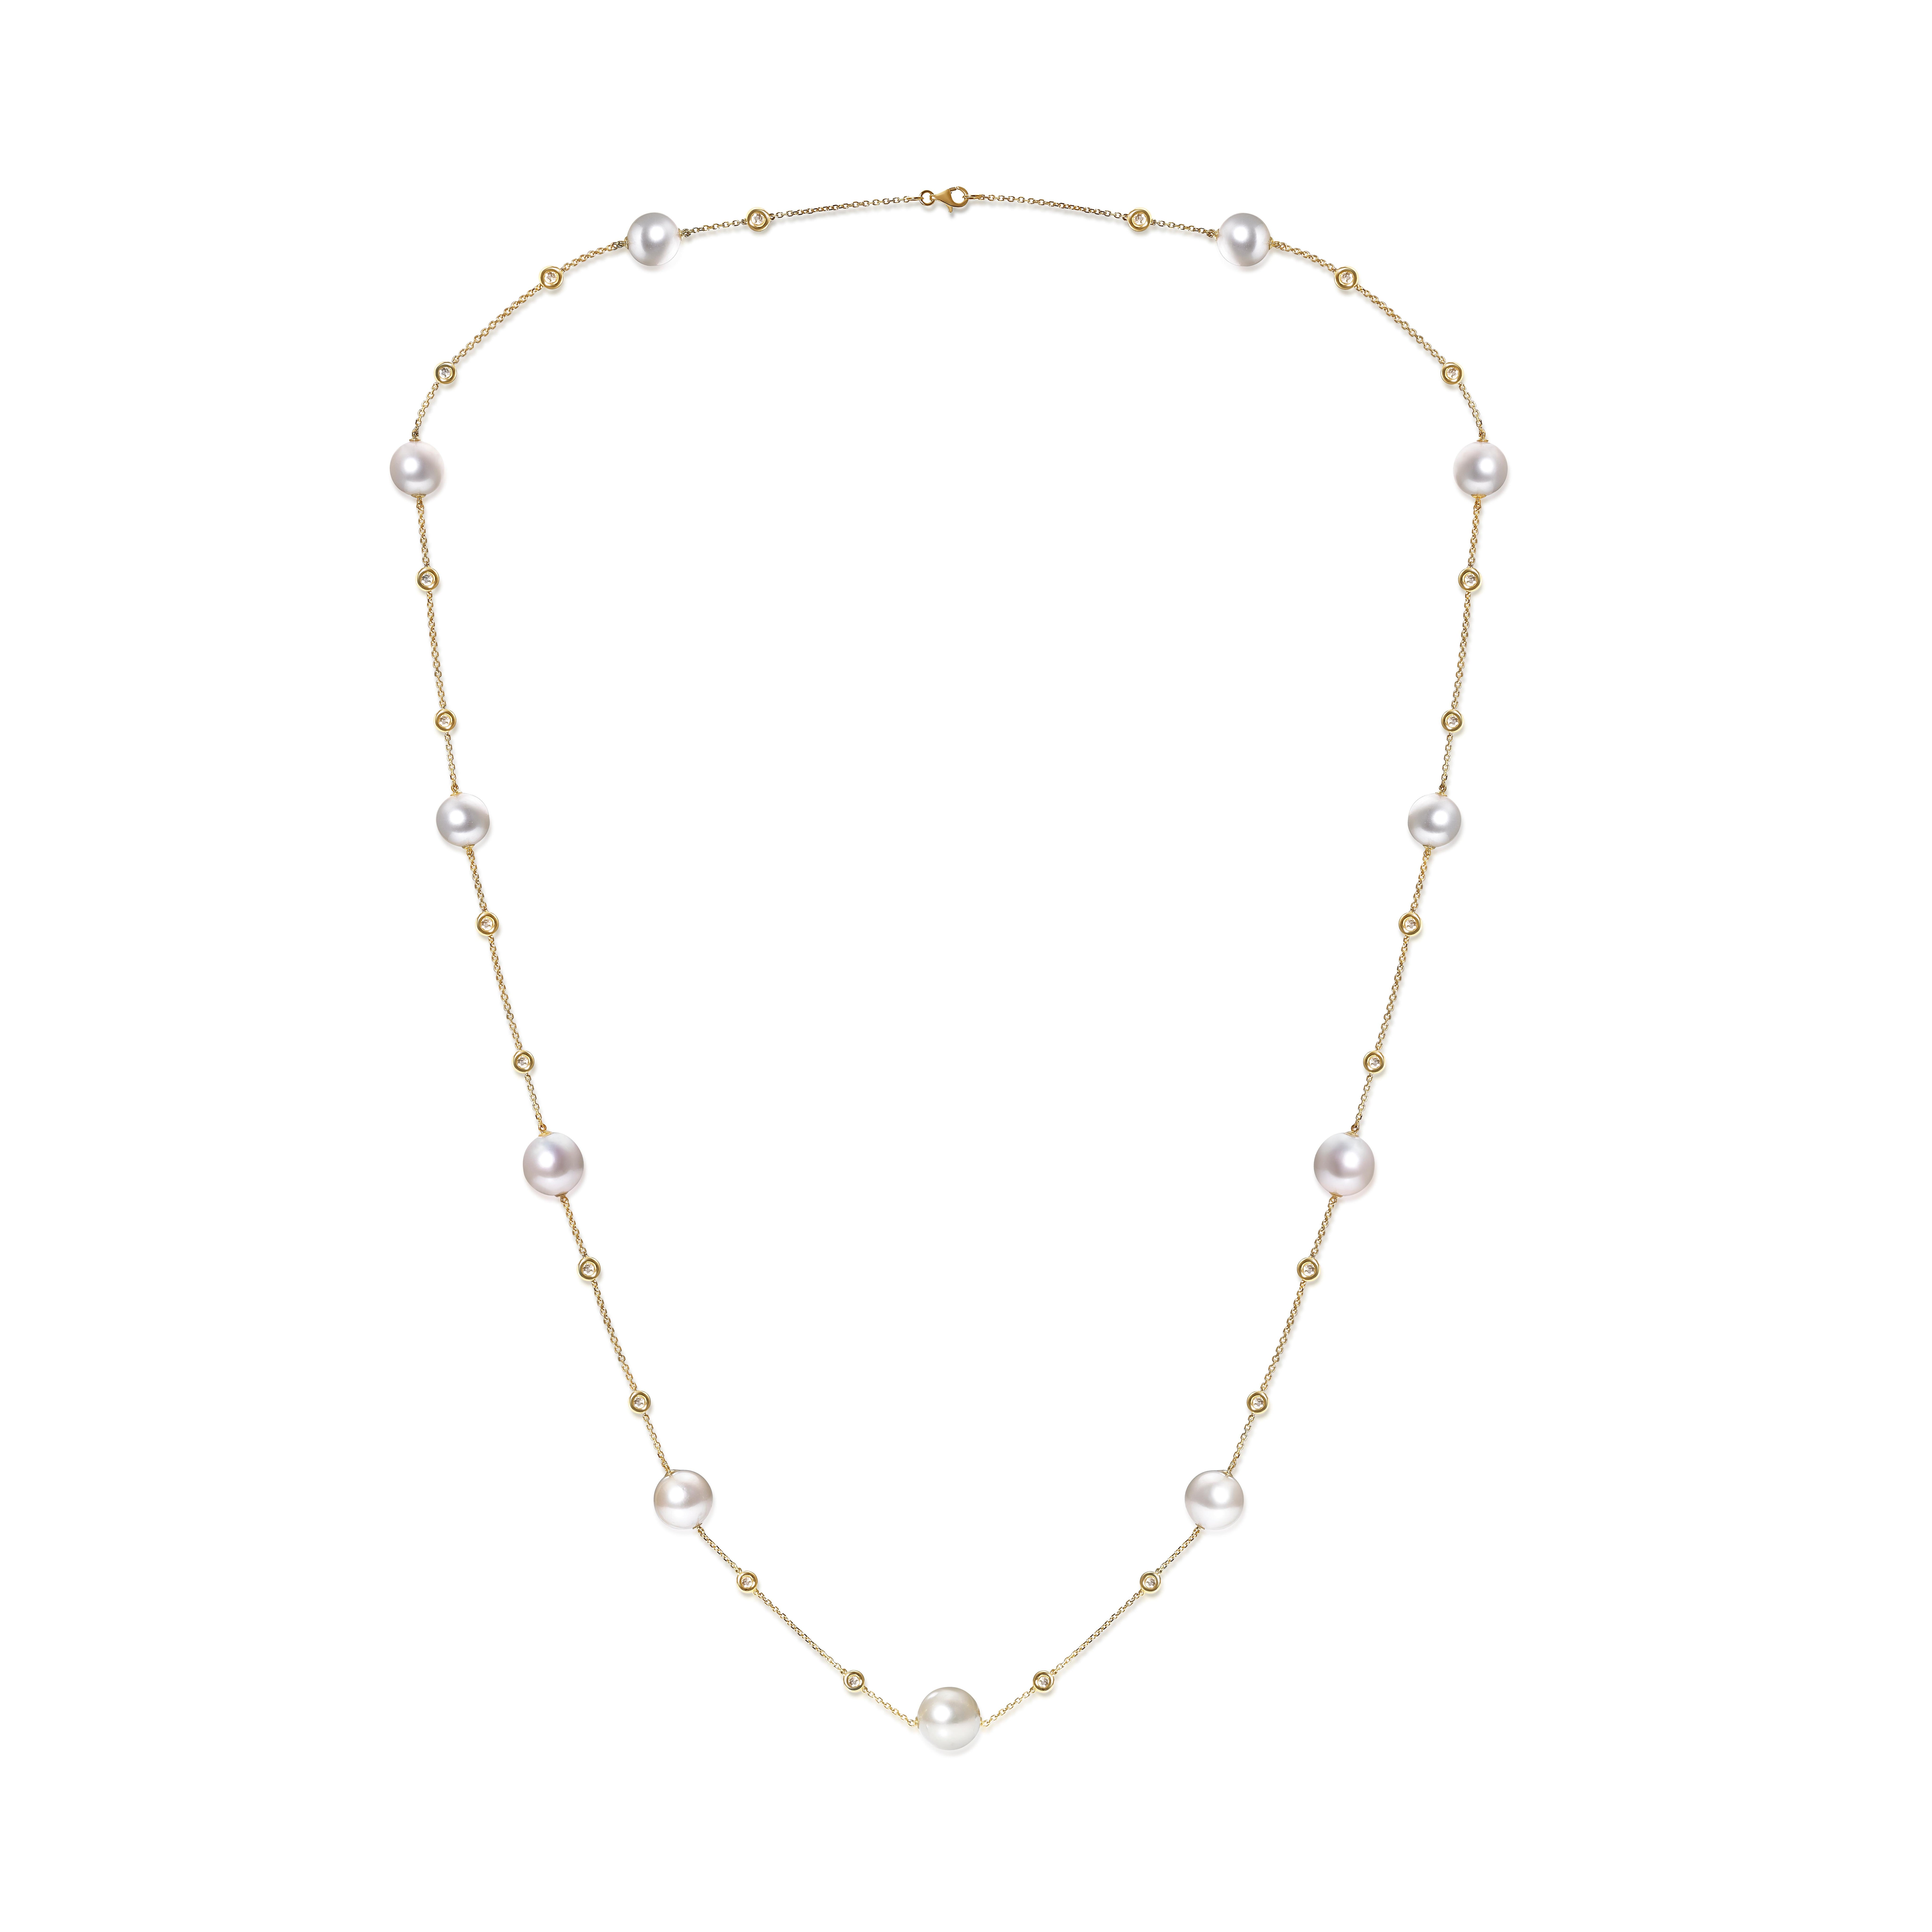 Die Perlen symbolisieren Unschuld, Schönheit, Aufrichtigkeit und Neubeginn. Das macht die Perle zu einem echten Klassiker unter den Brautschmuckstücken.

Die Halskette als die Perle 11 Stücke, und die Seite Diamant als 1,58 Karat, in 18K Gelbgold,